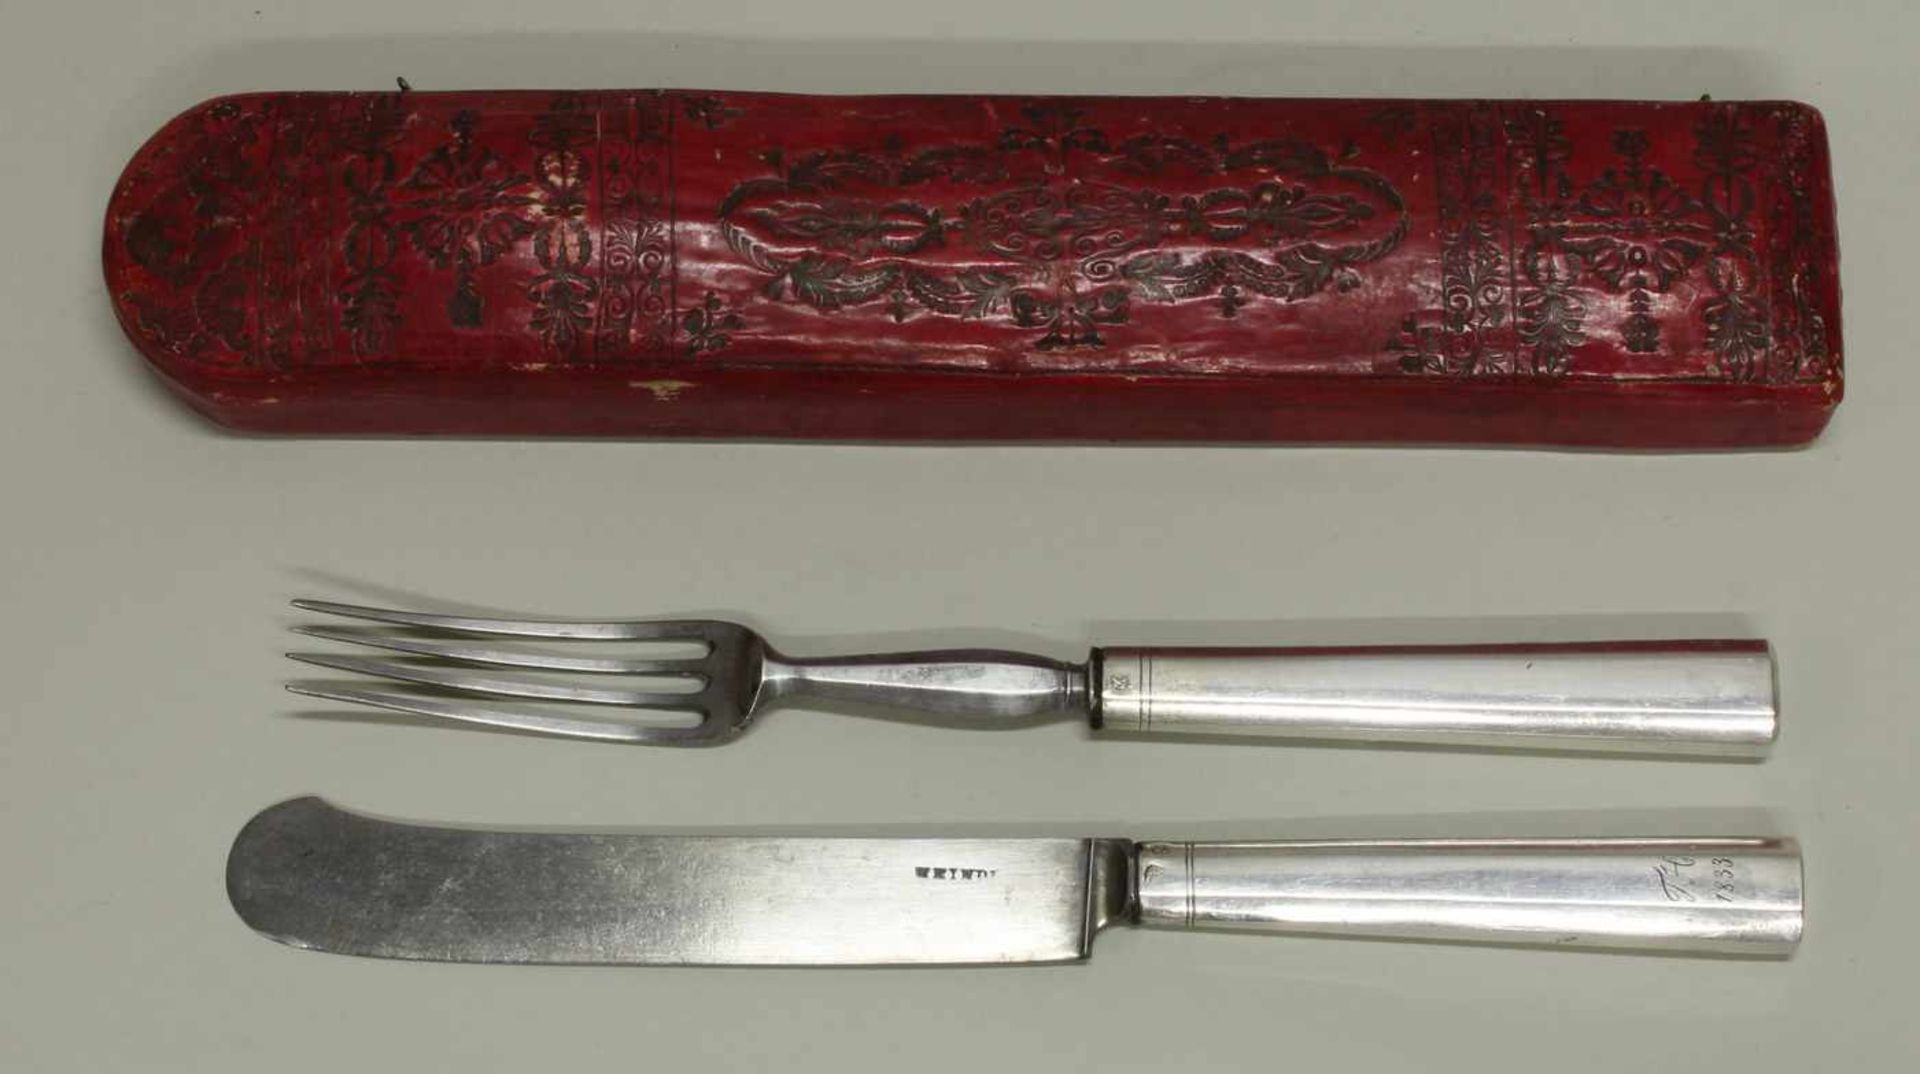 Messer und Gabel, Silber 13-lötig, Lemberg, um 1833, Klinge und Schiff aus Stahl, datierte - Image 2 of 2